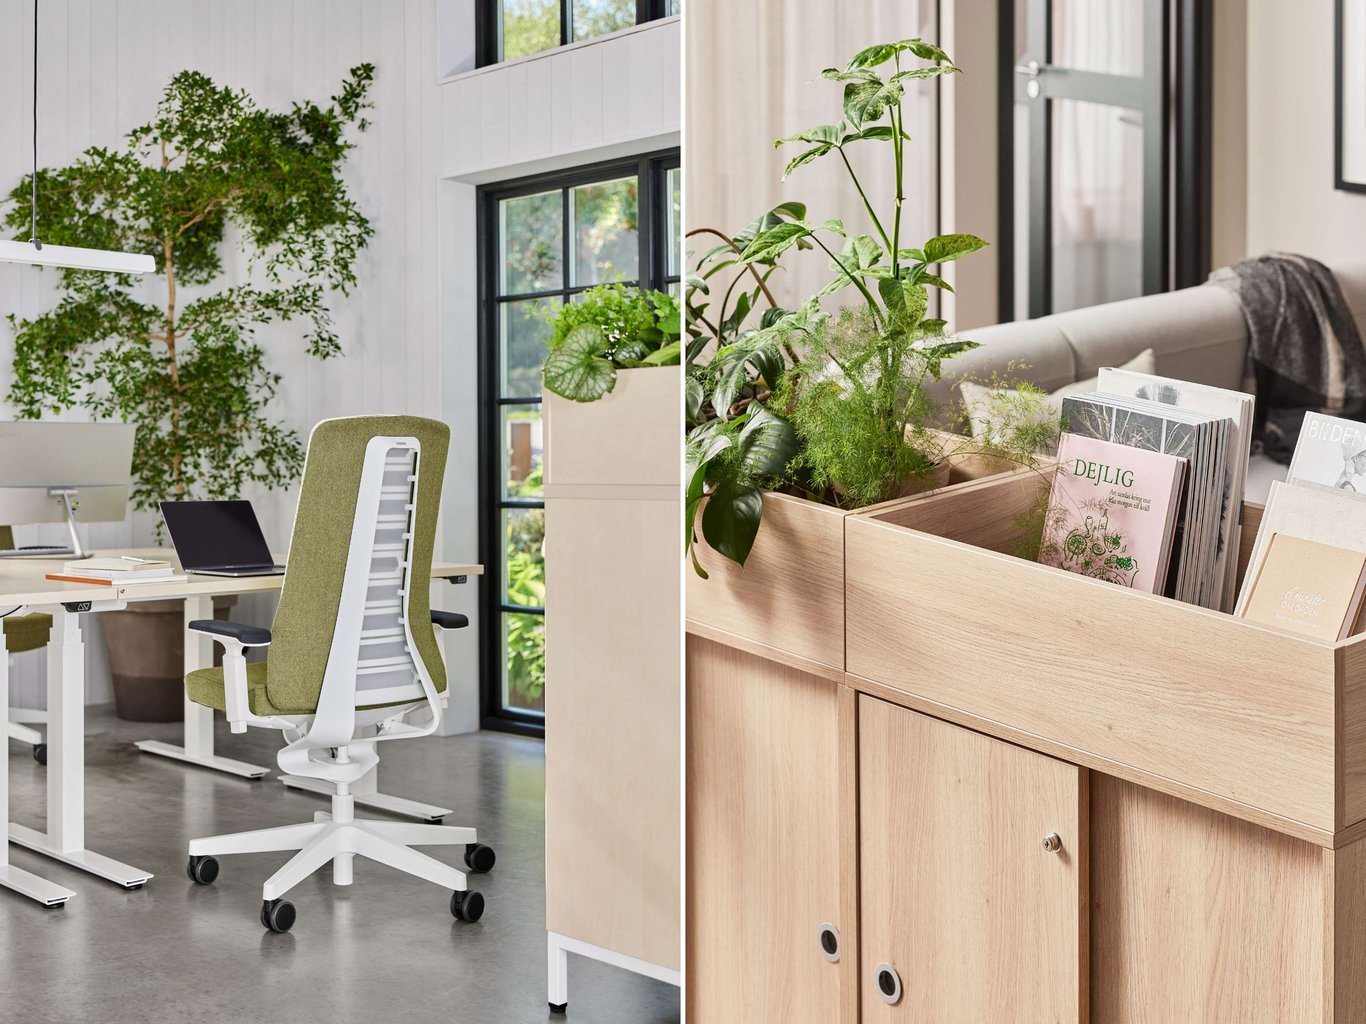 Lyse kontorer med naturlige elementer som træ og grønne planter